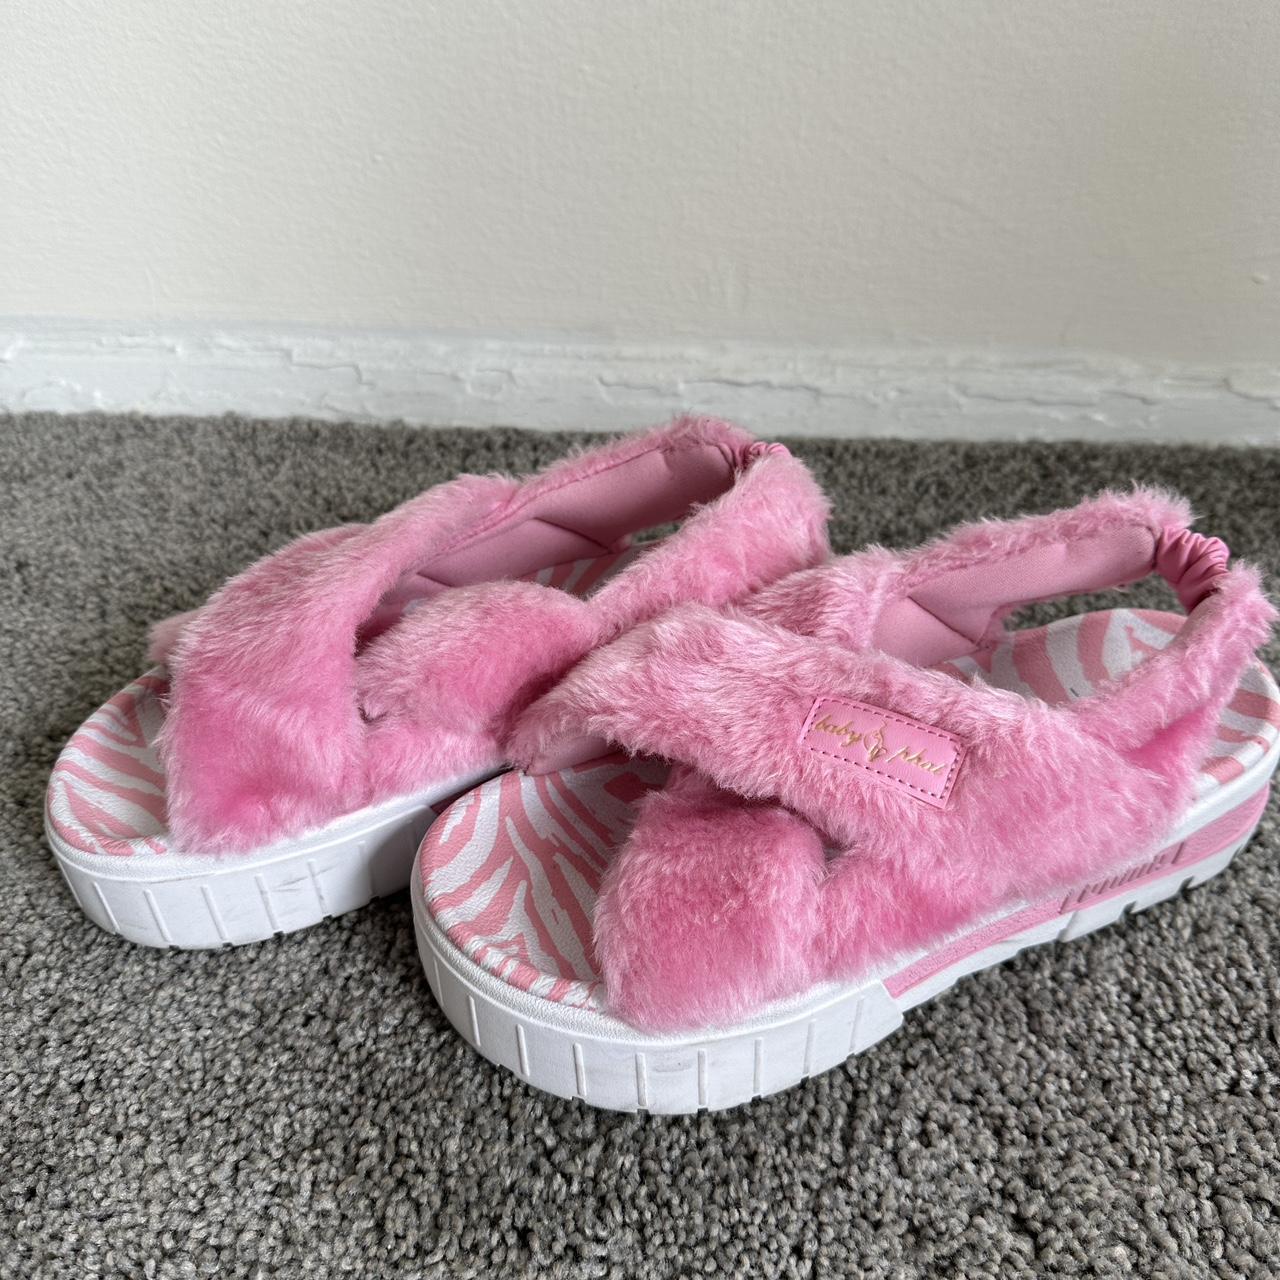 Baby phat pink fur slipper - Depop